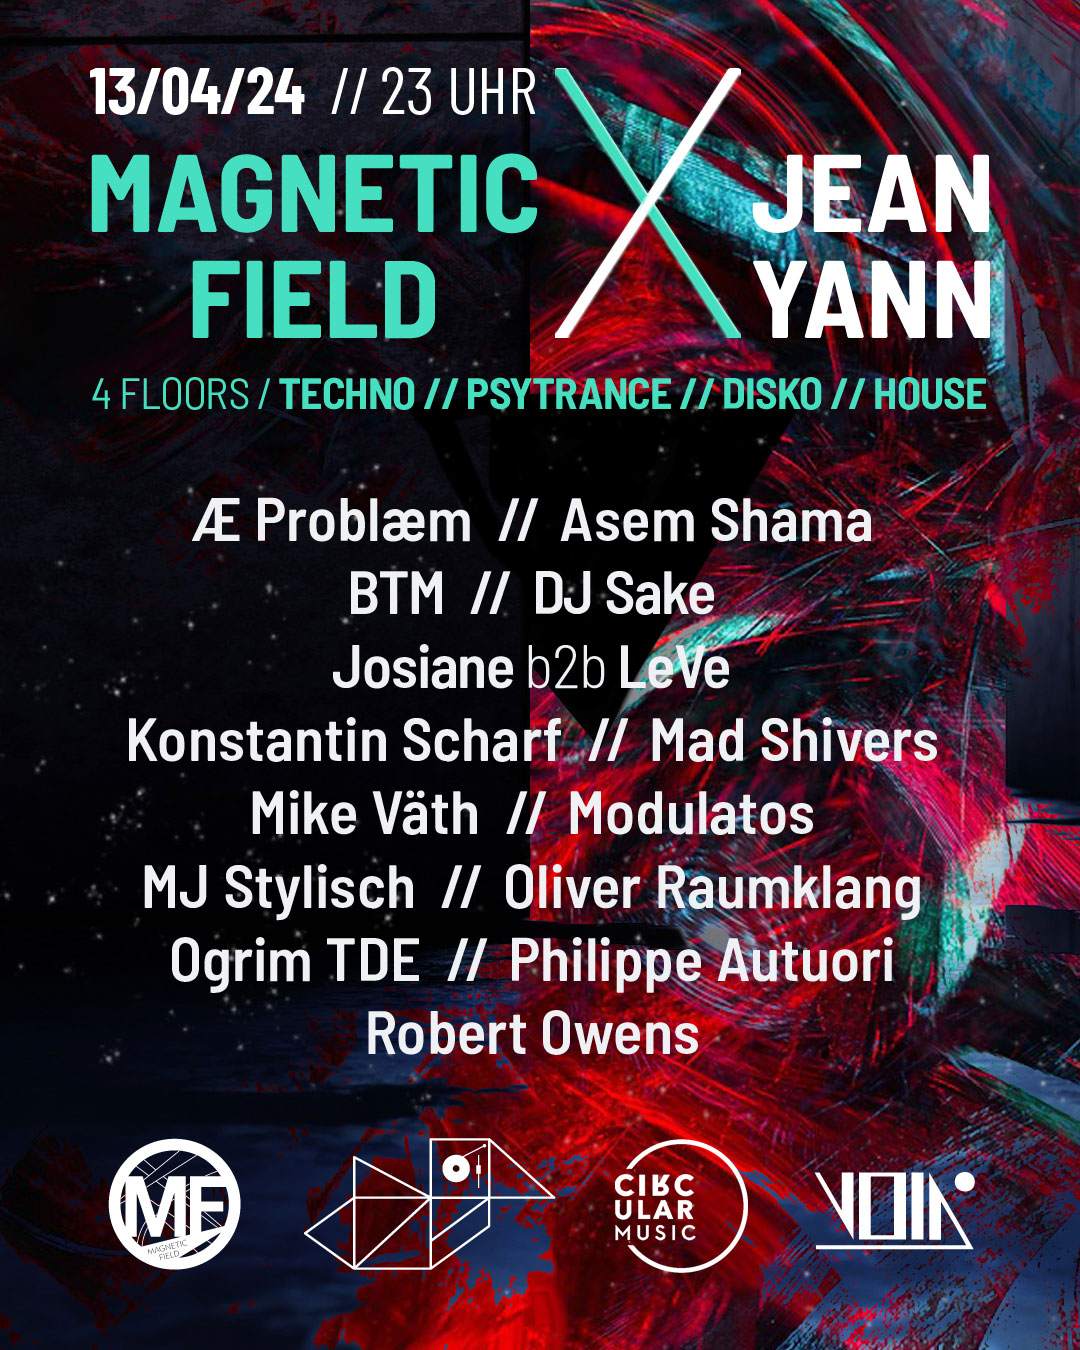 Magnetic Field Berlin Feat. Jean Yann on 4 floors (Psytrance, Techno, House, Disko) - フライヤー裏